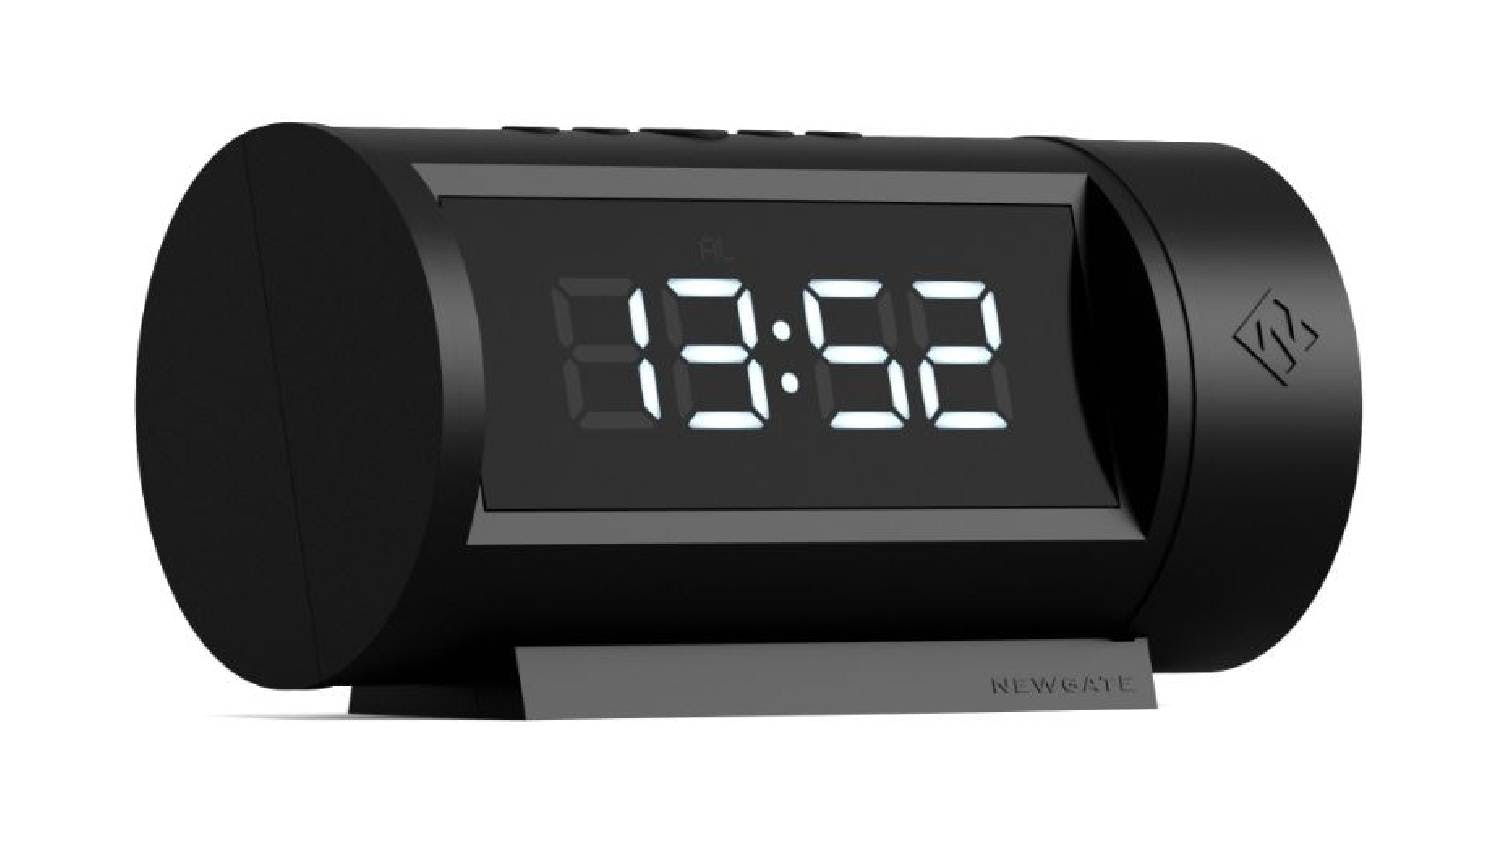 Newgate "Pil" LED Alarm Clock - Black